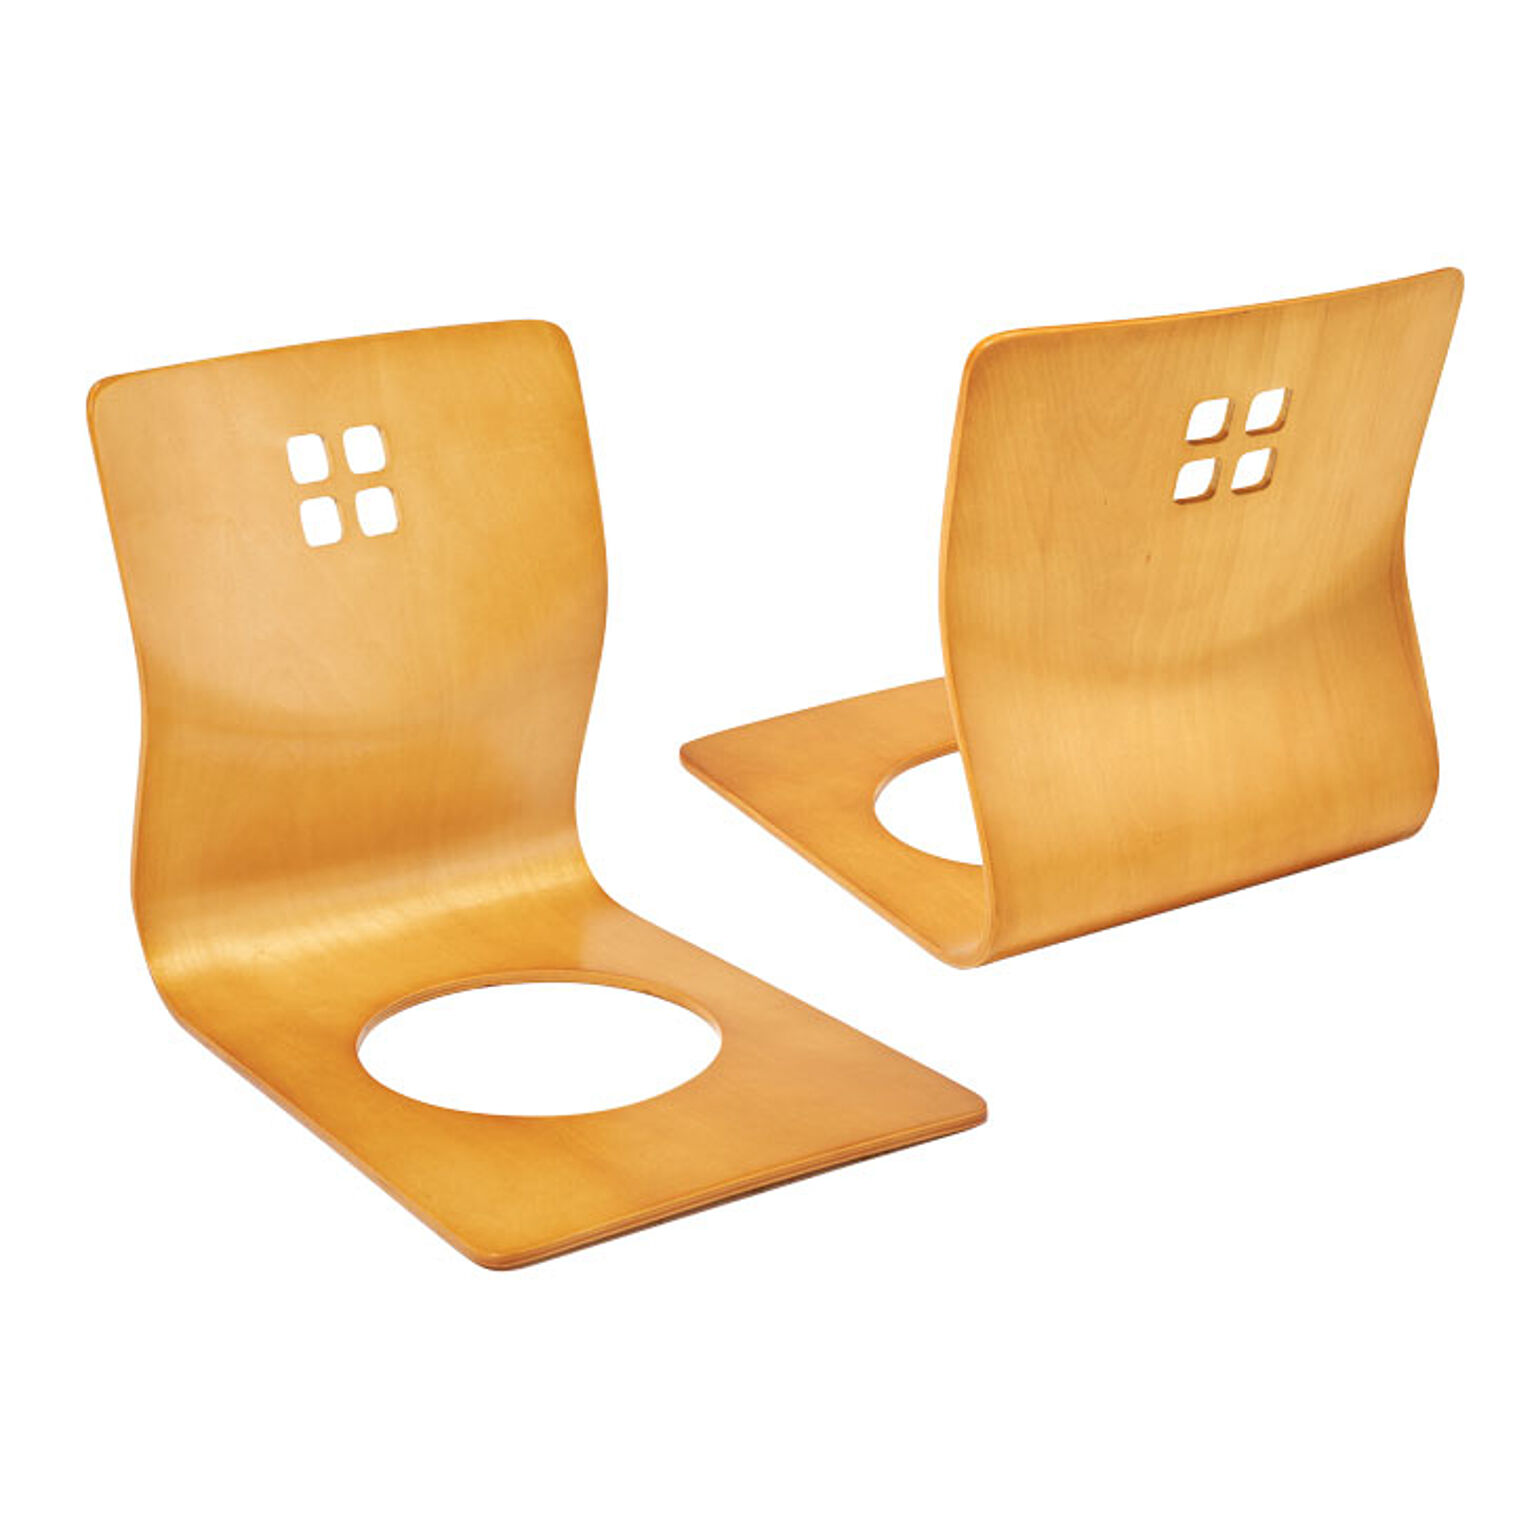 座椅子 木製 曲木椅子 2脚組 背もたれ 和室 座敷 和モダン 旅館 スタッキング収納 LMZ-4299